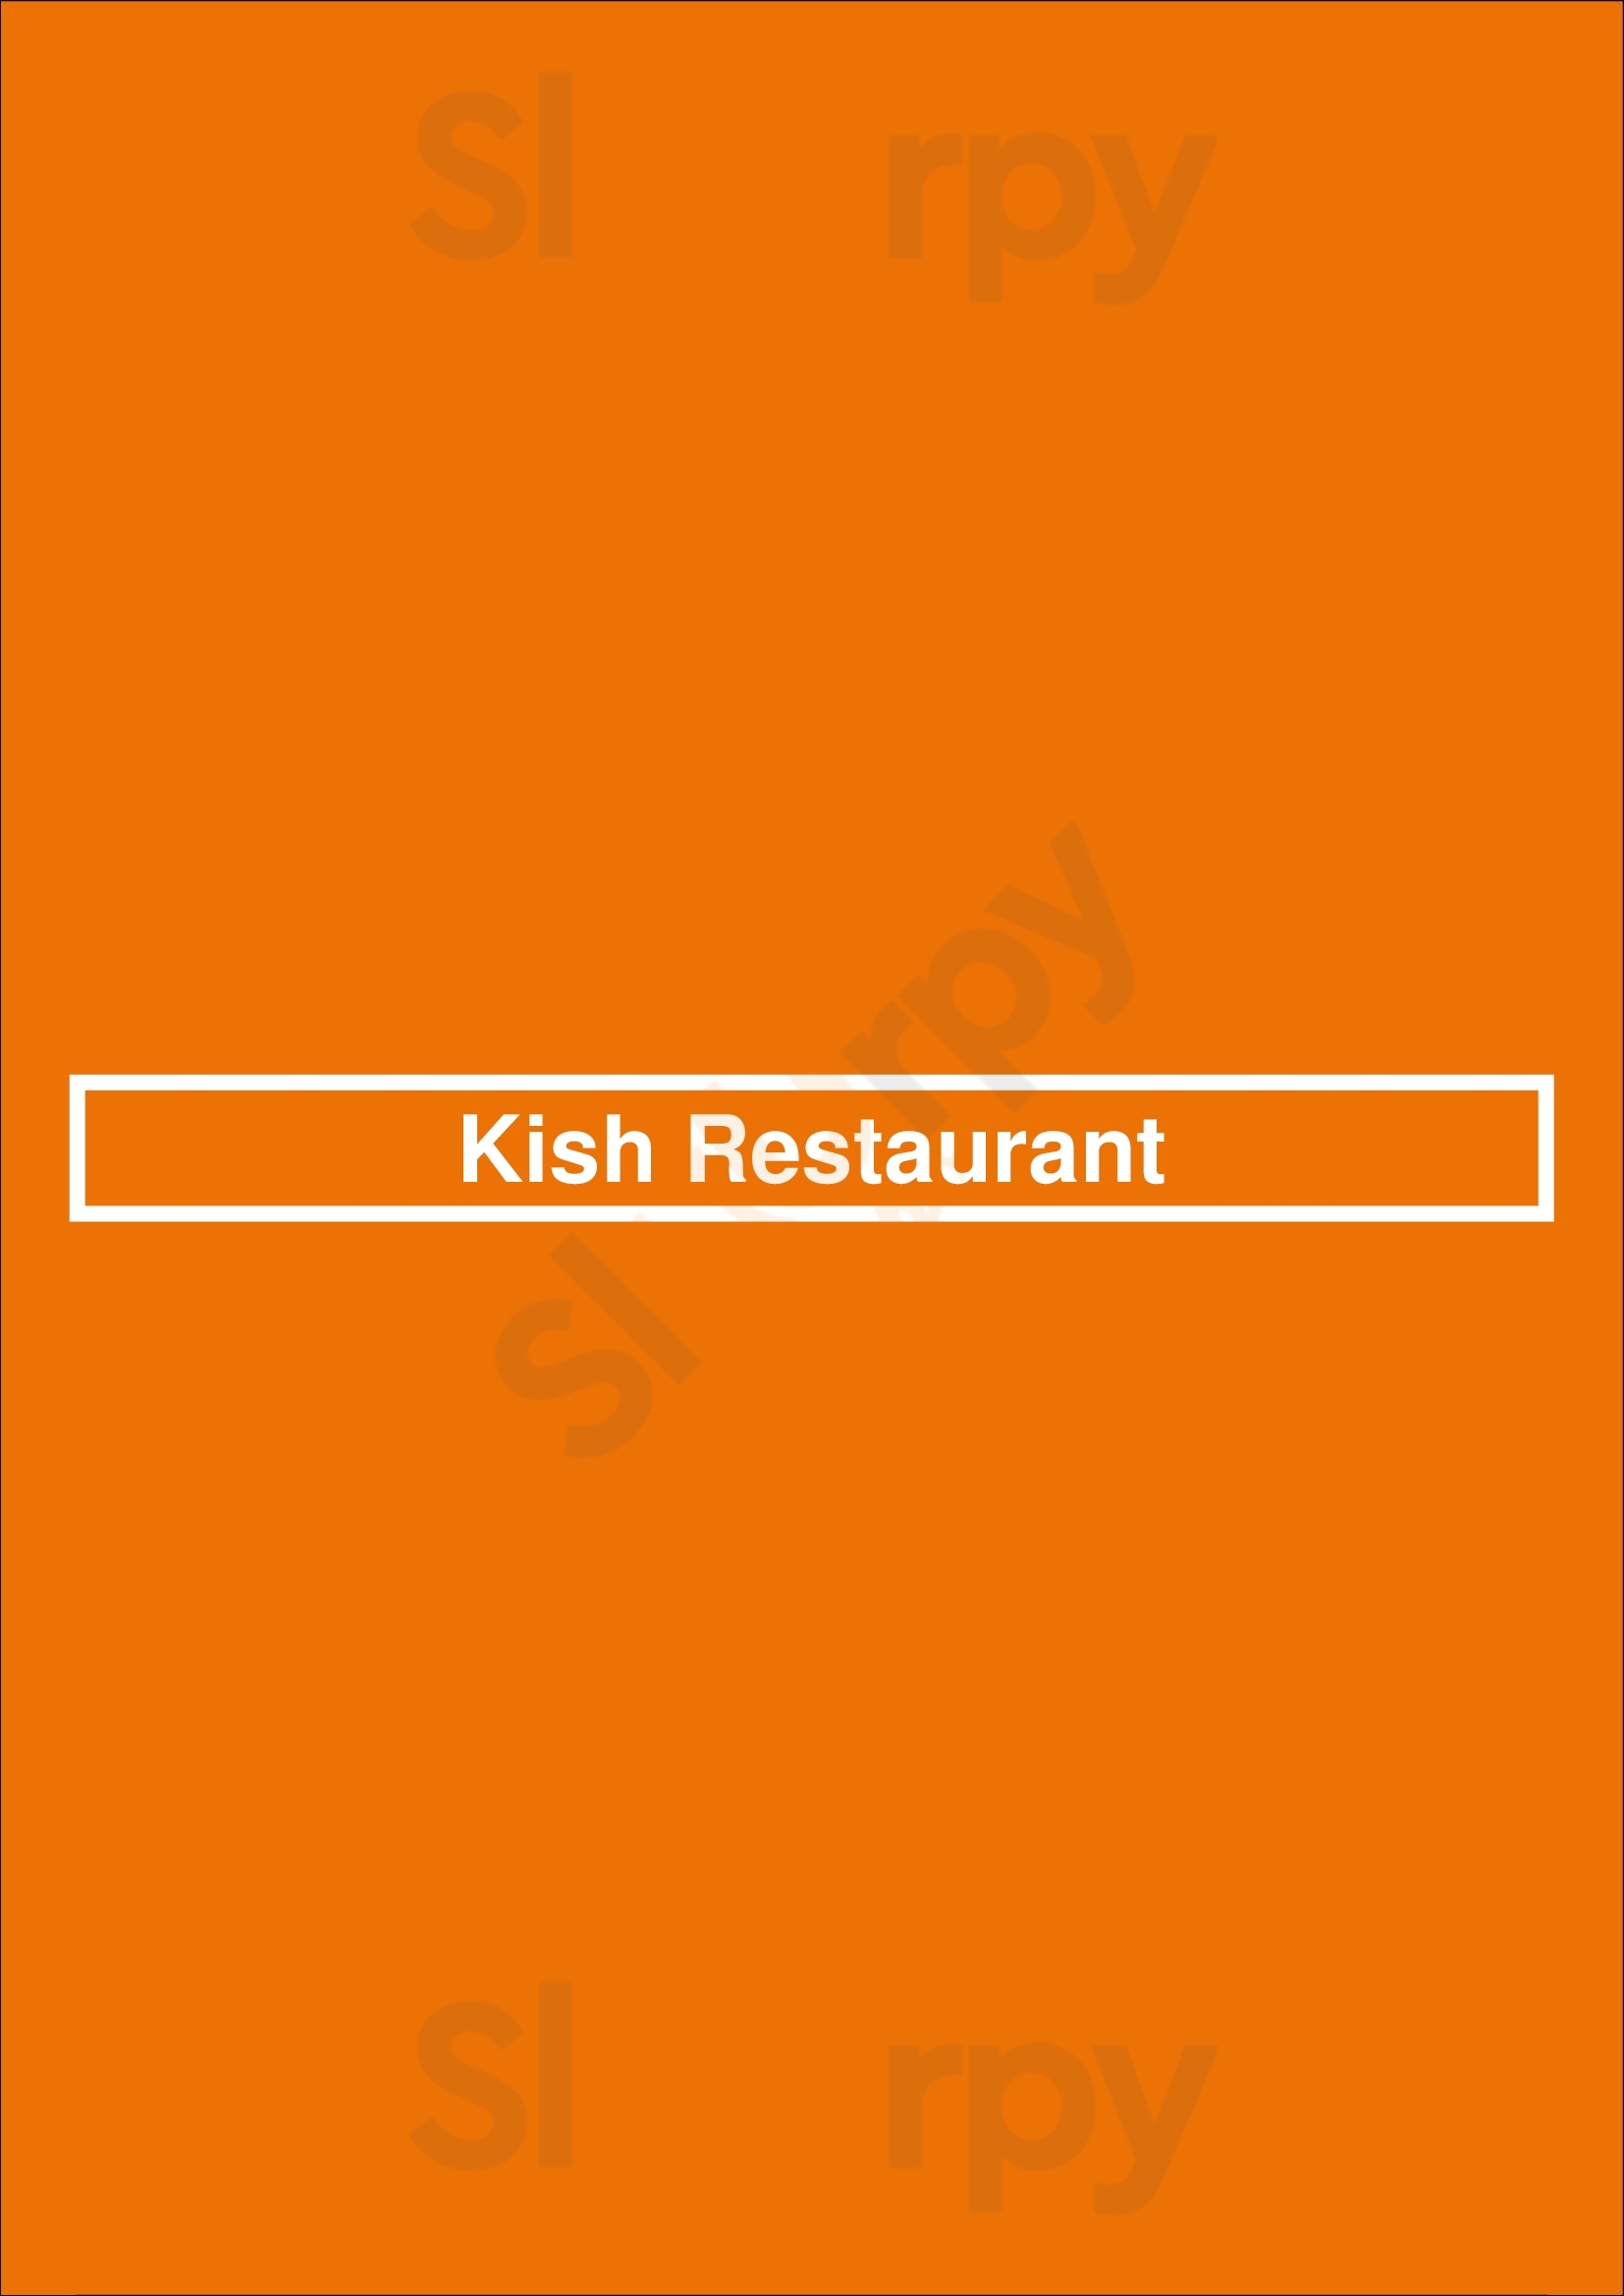 Kish Restaurant Thornhill Menu - 1